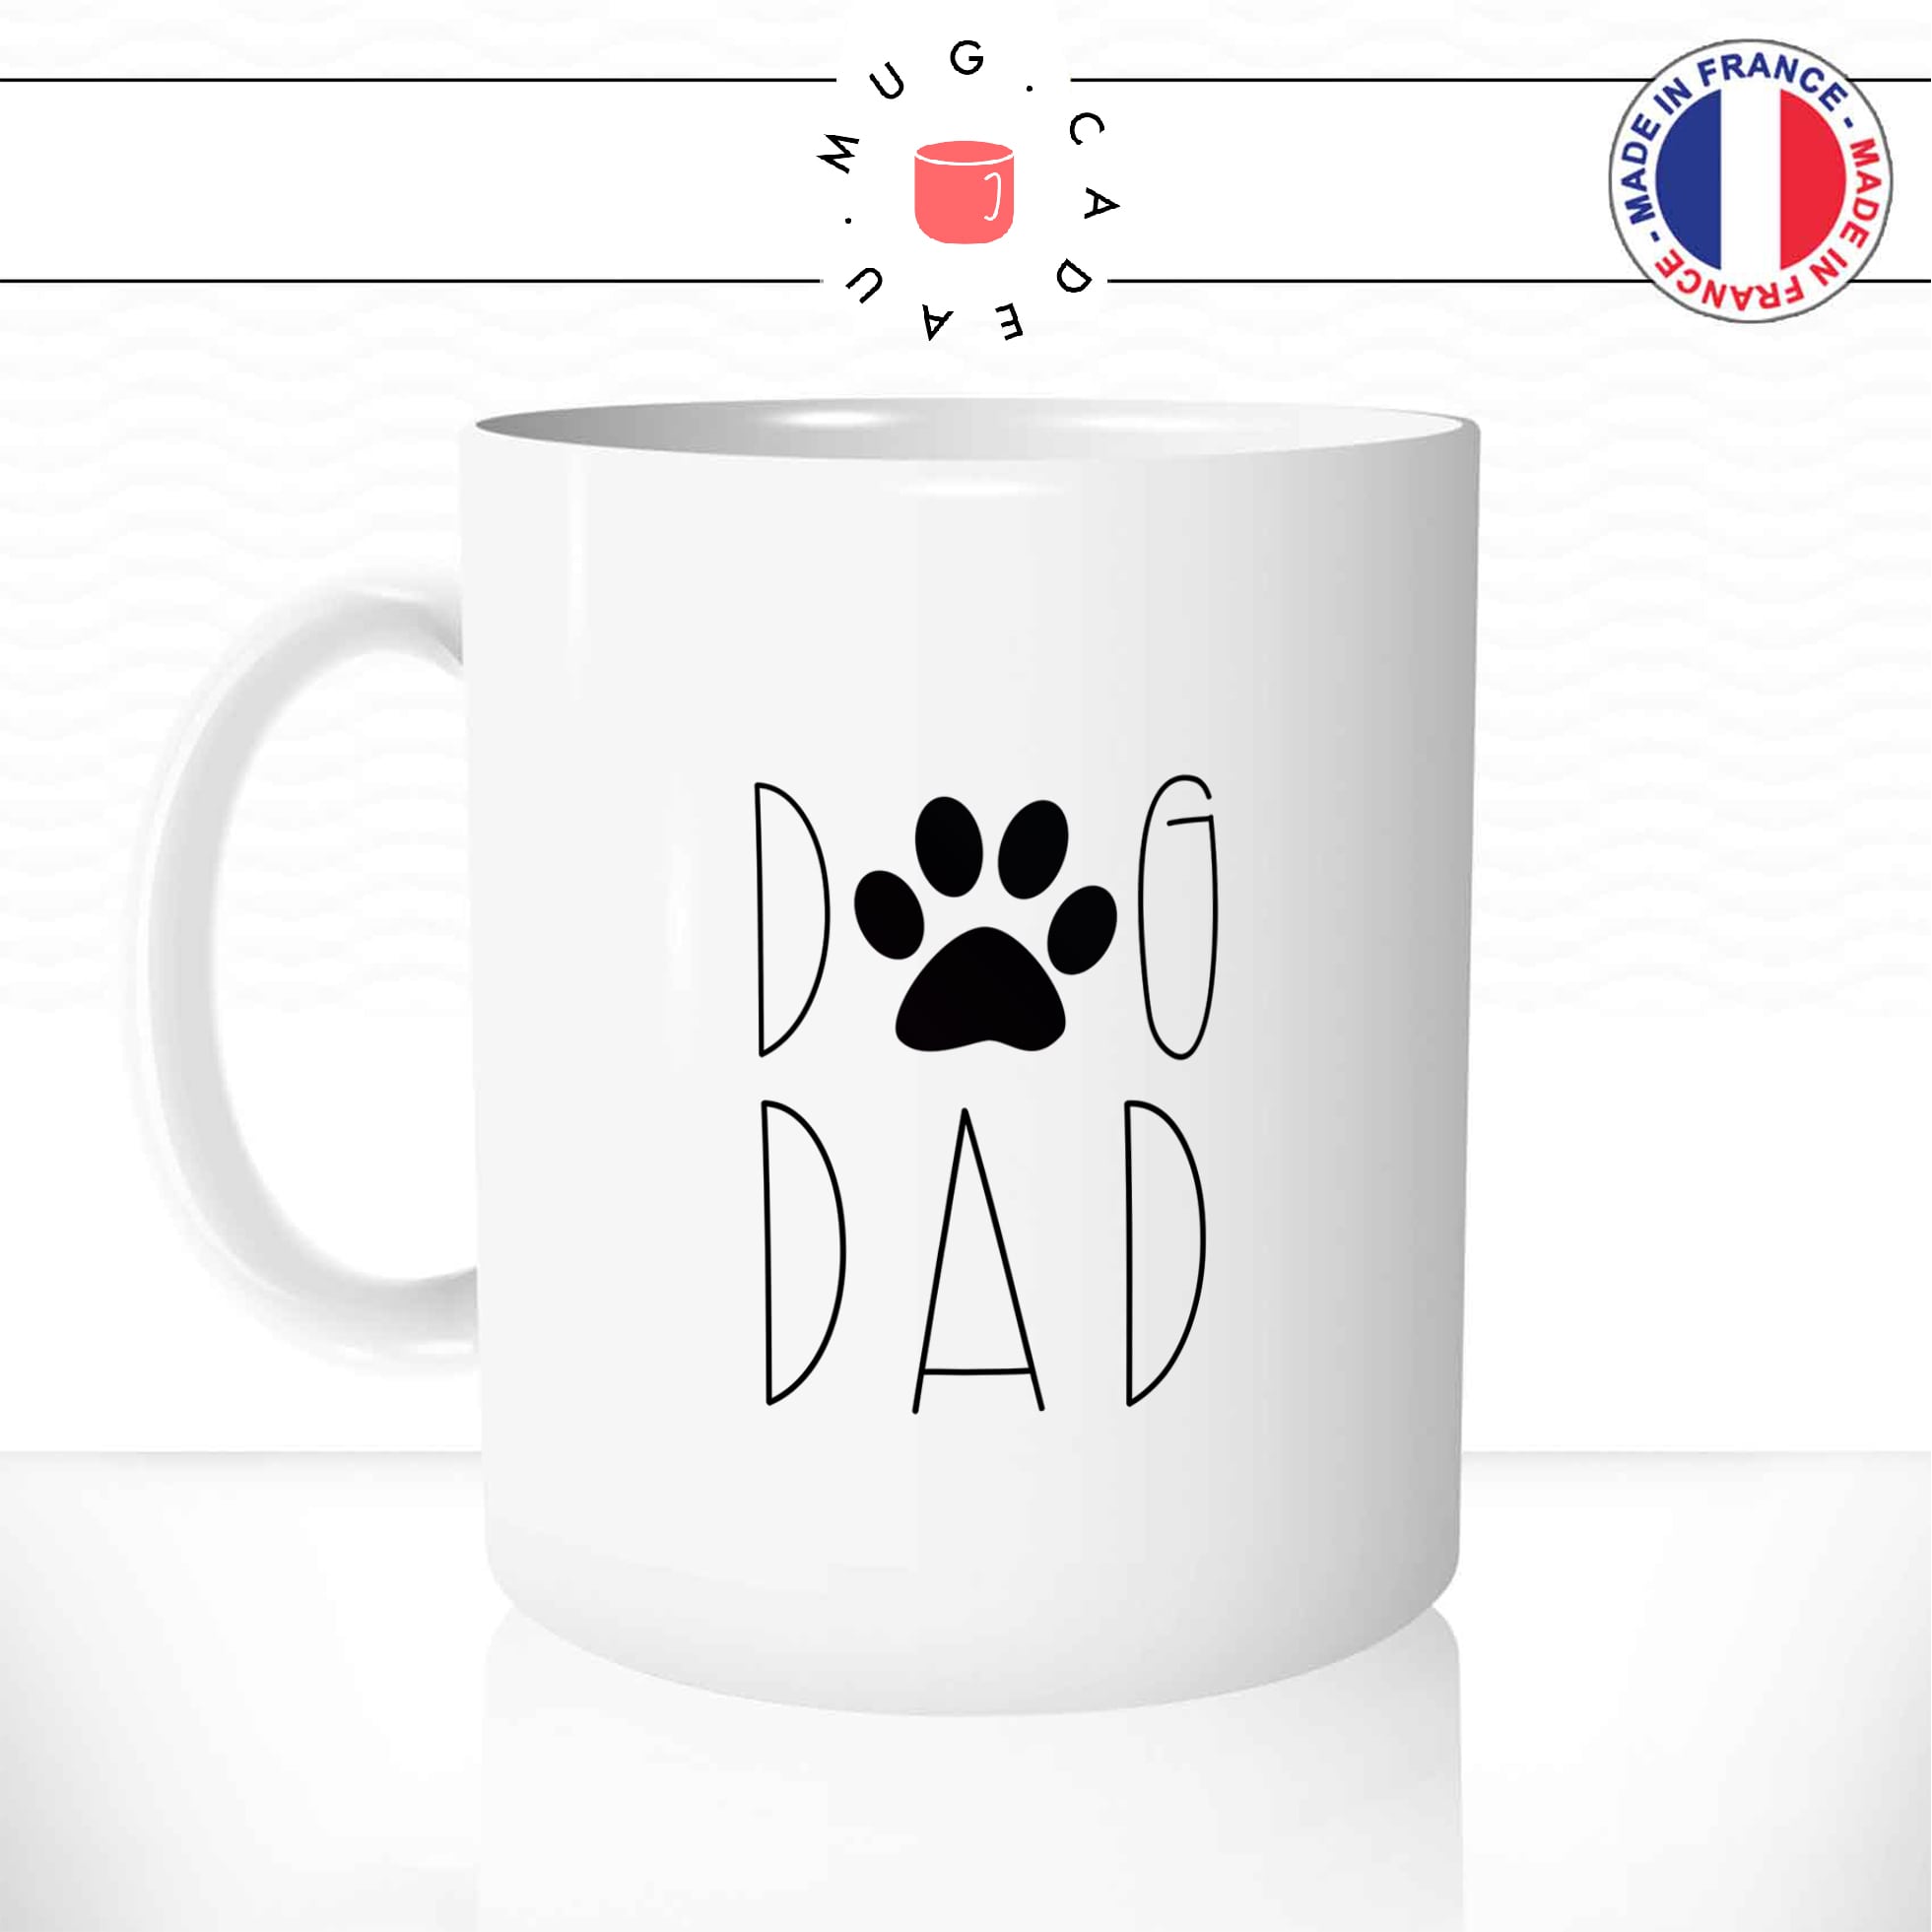 mug-tasse-chien-dog-compagnie-dad-papa-patte-paw-dessin-animal-mignon-enfant-idée-cadeau-personnalisé-original-cafe-thé1